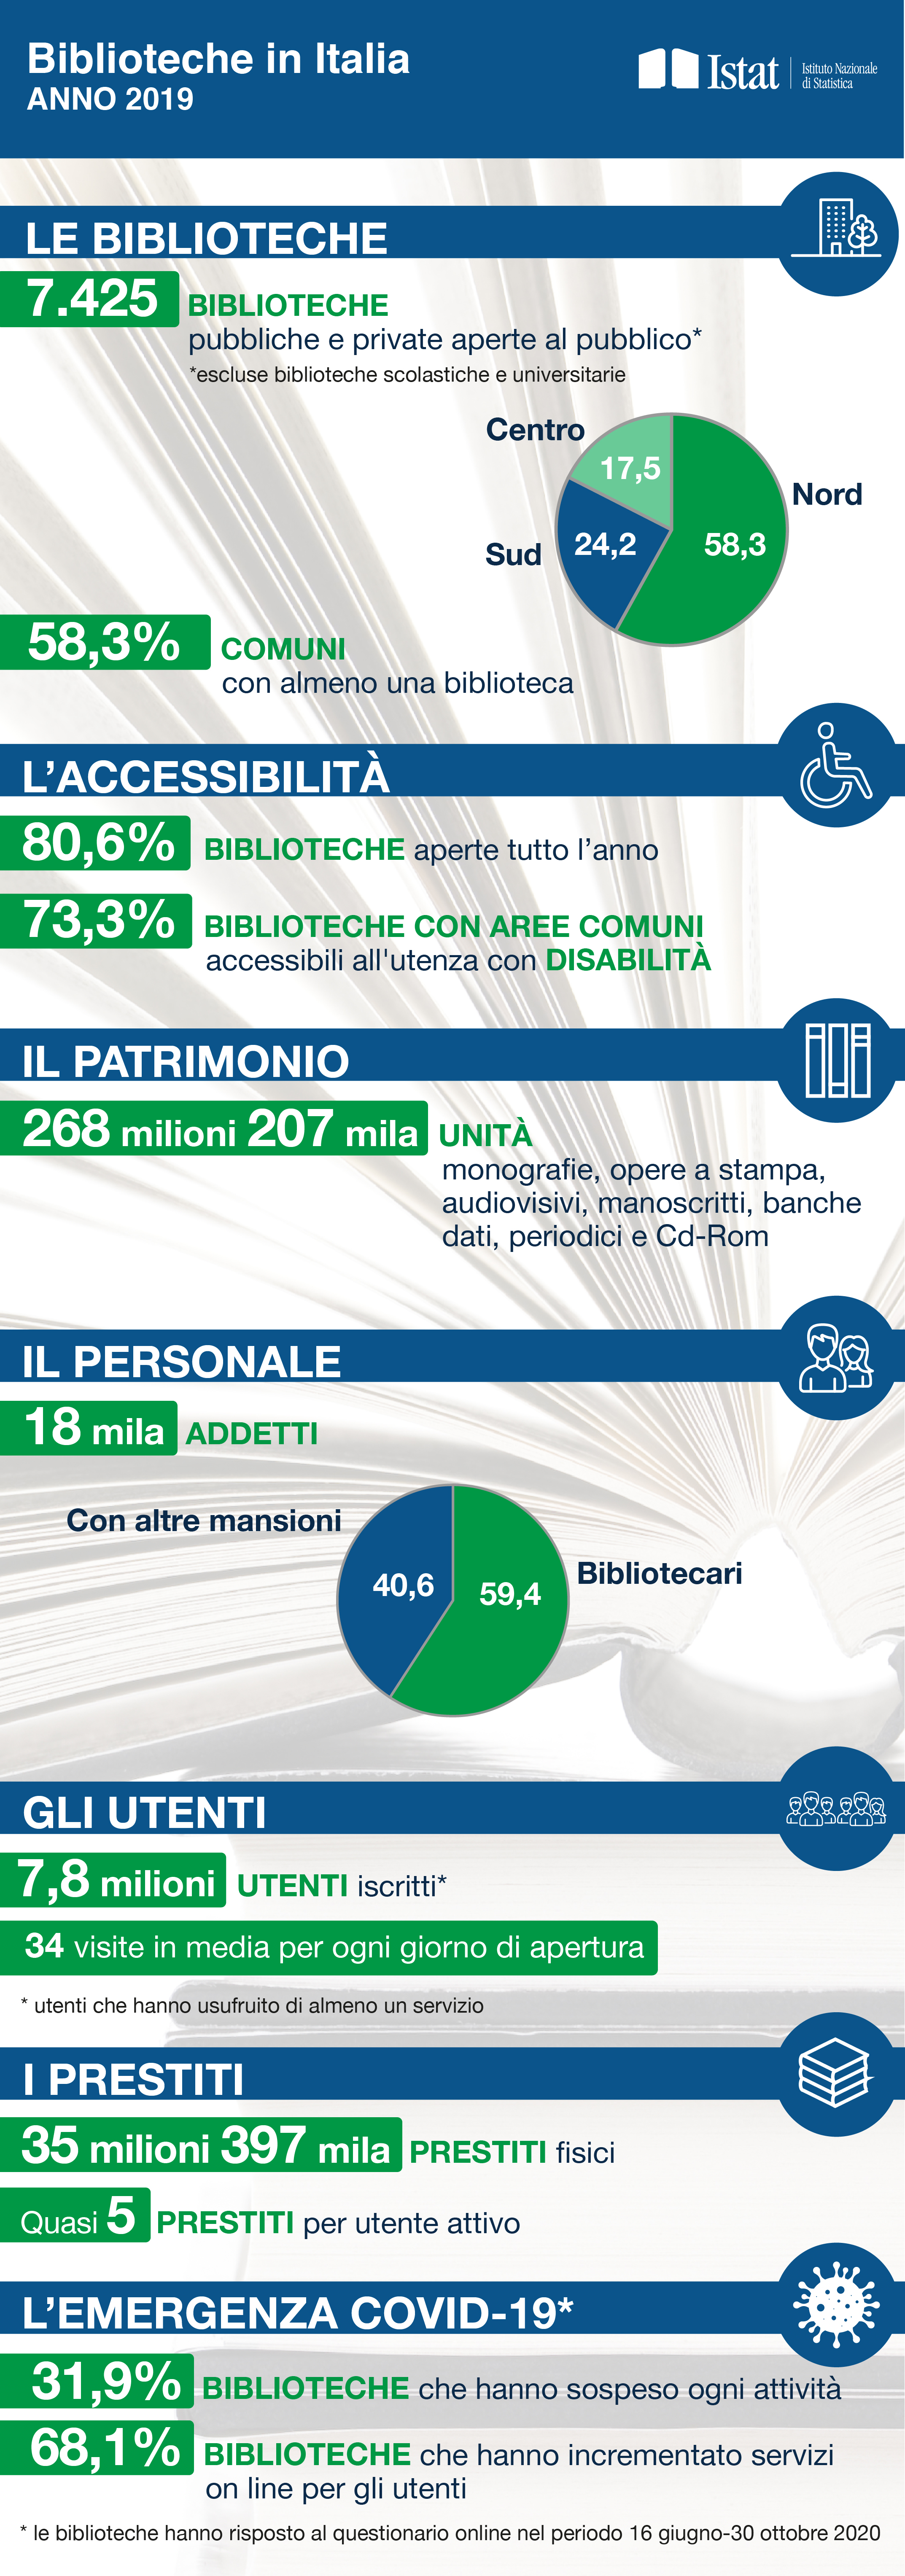 Le biblioteche in Italia-anno 2019